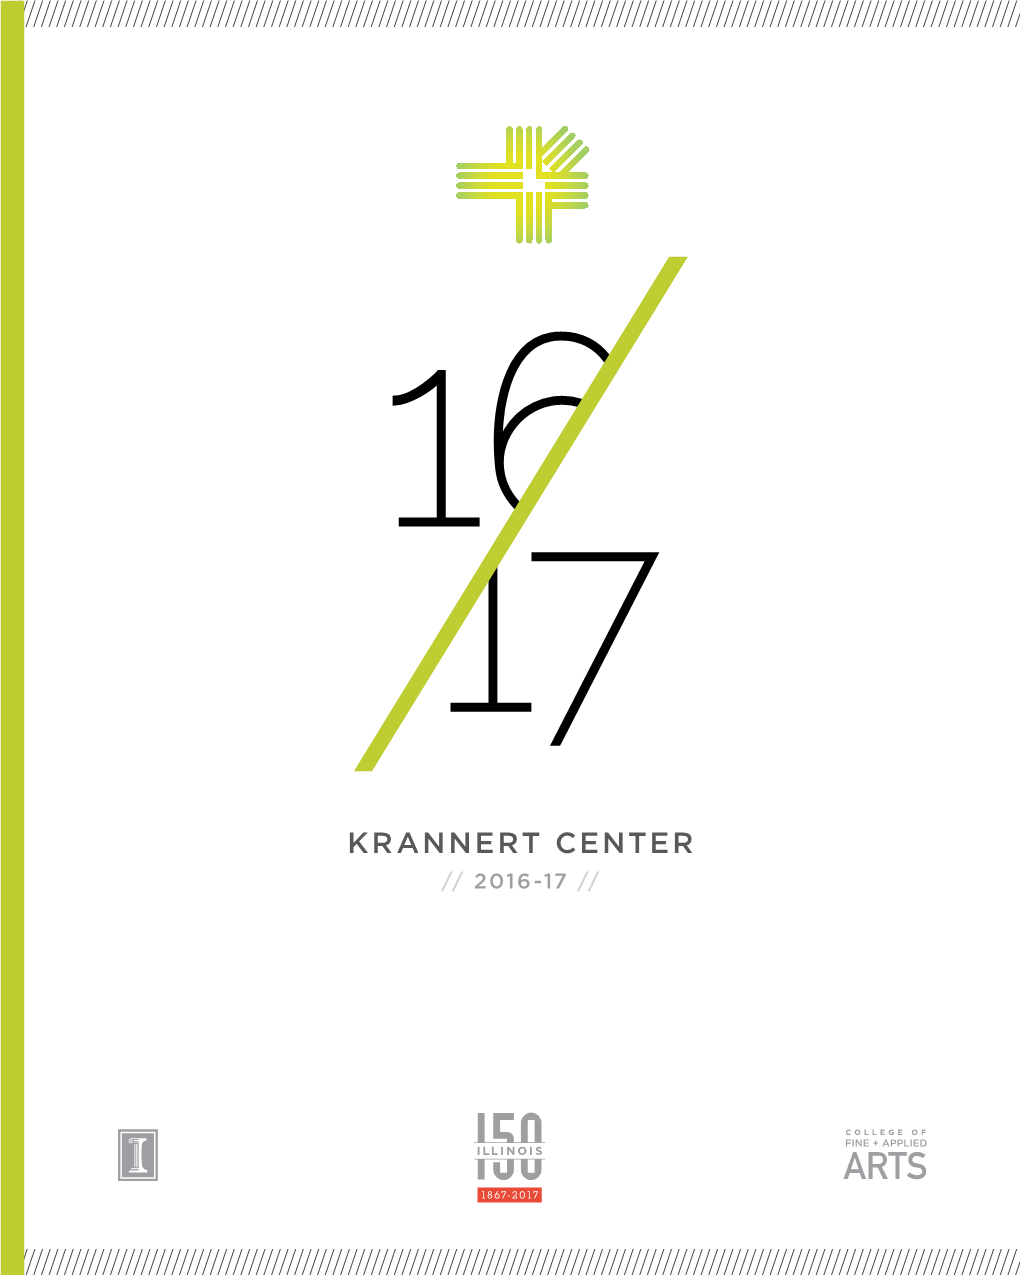 Download the 2016-17 Krannert Center Season Book